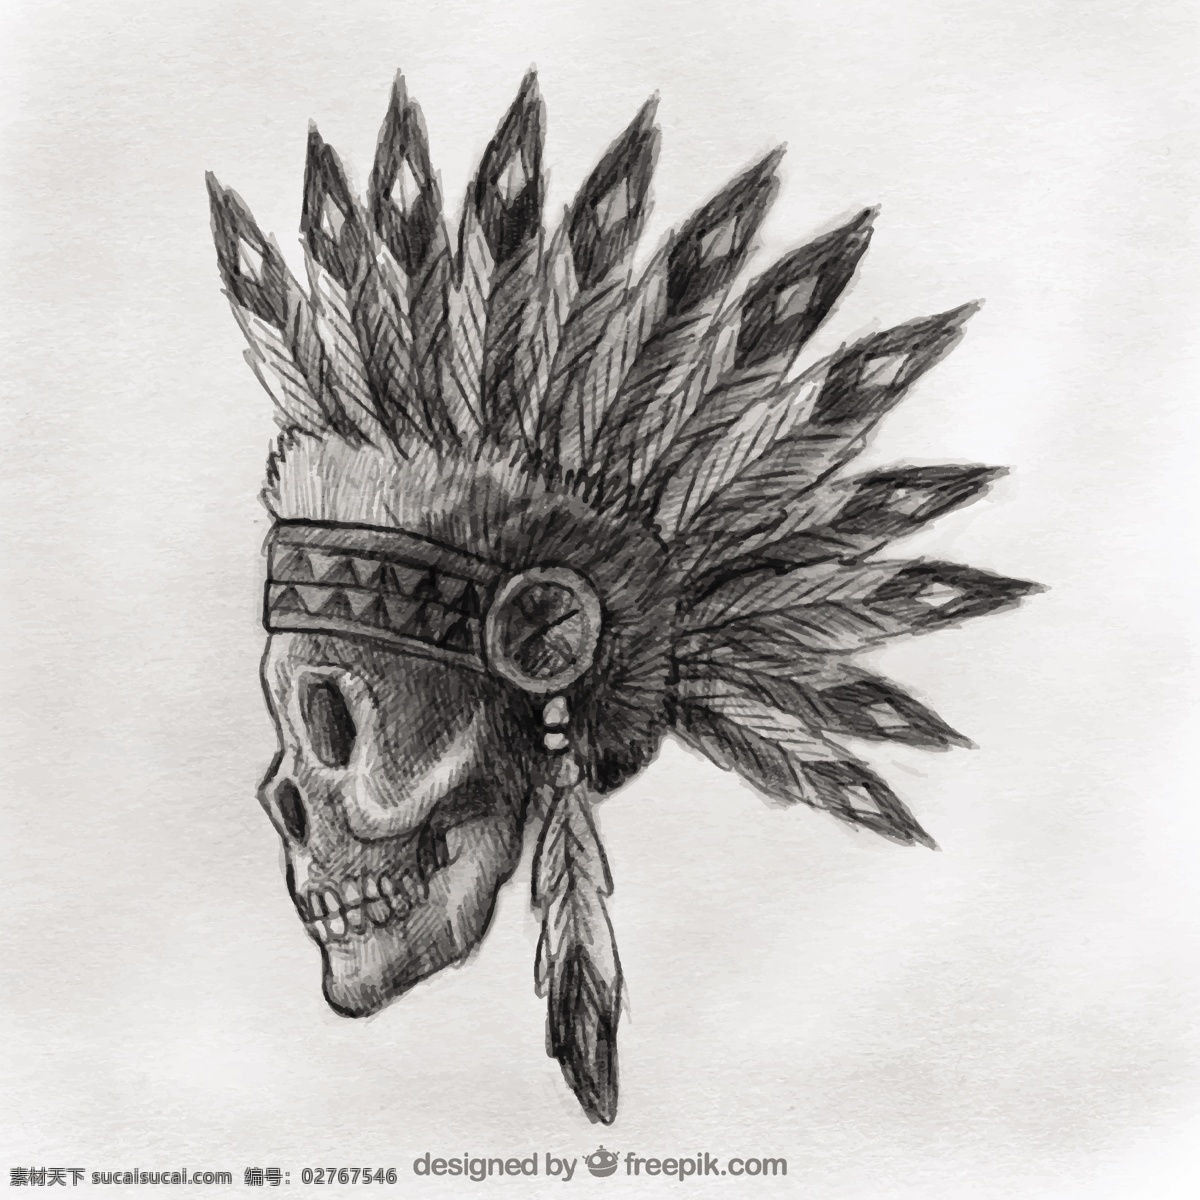 手绘 印第安 人头骨 手 头骨 装饰 印度 绘画 骷髅 羽毛 古董 哥特式 粗略 素描 古老的 本土的 土著的